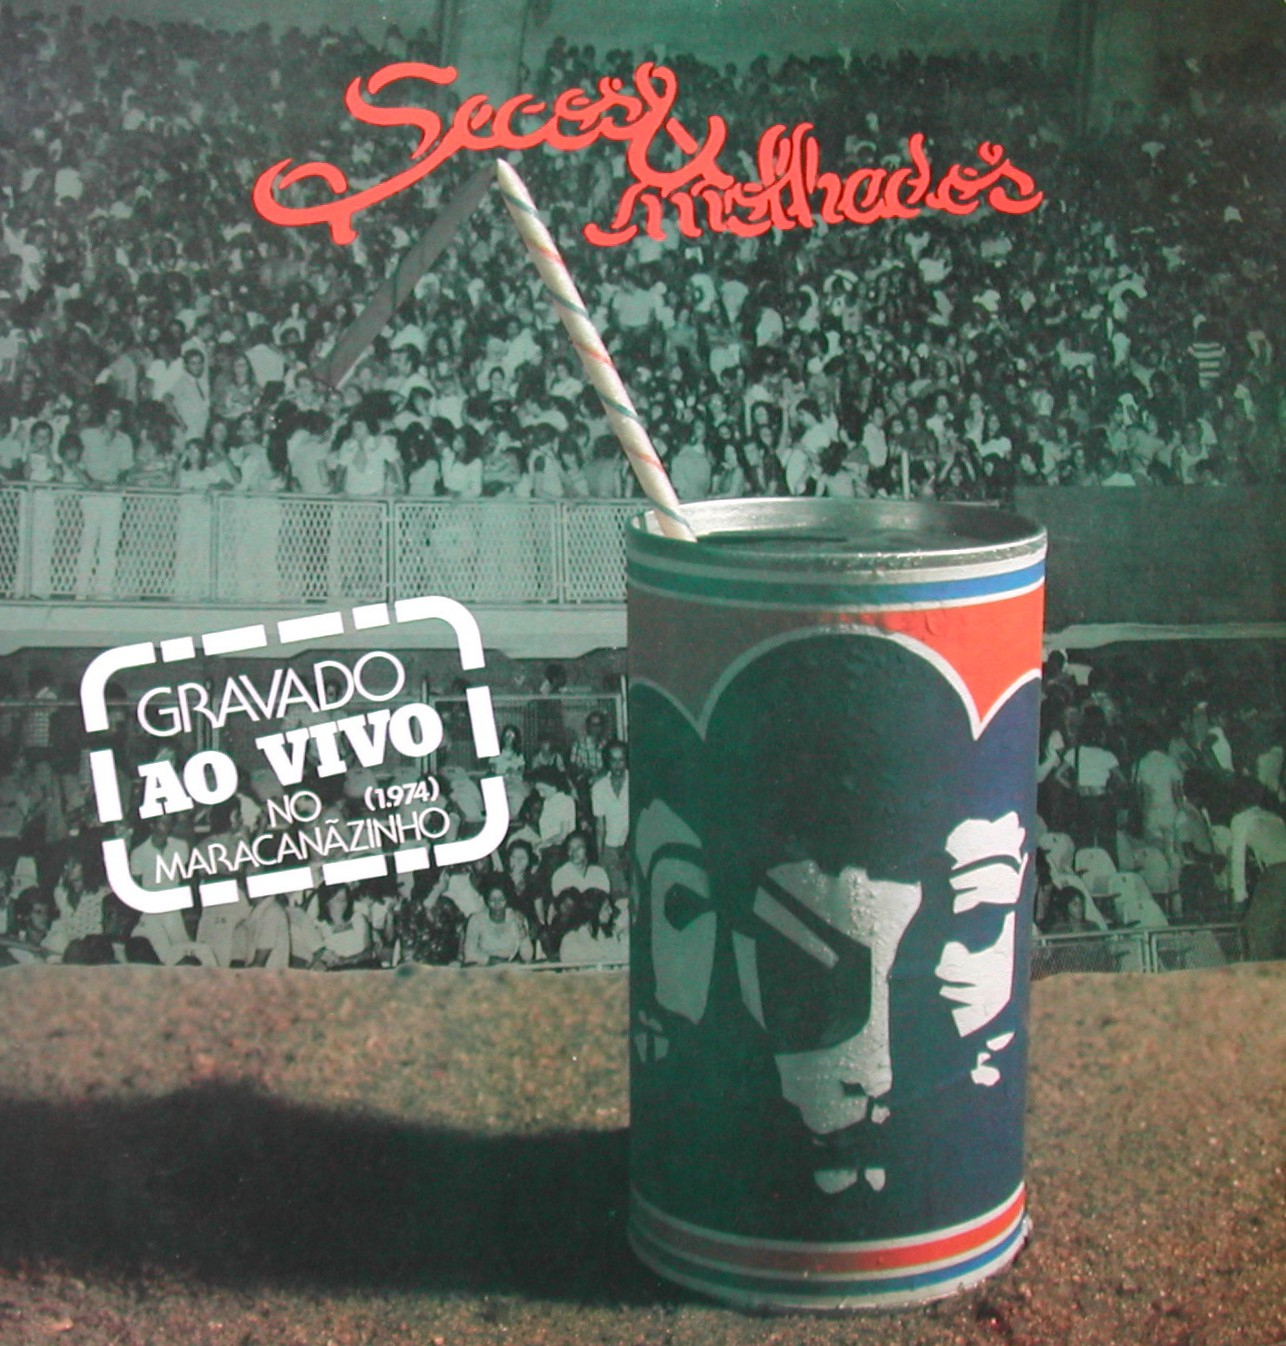 Capa do disco do show gravado no Maracanãzinho